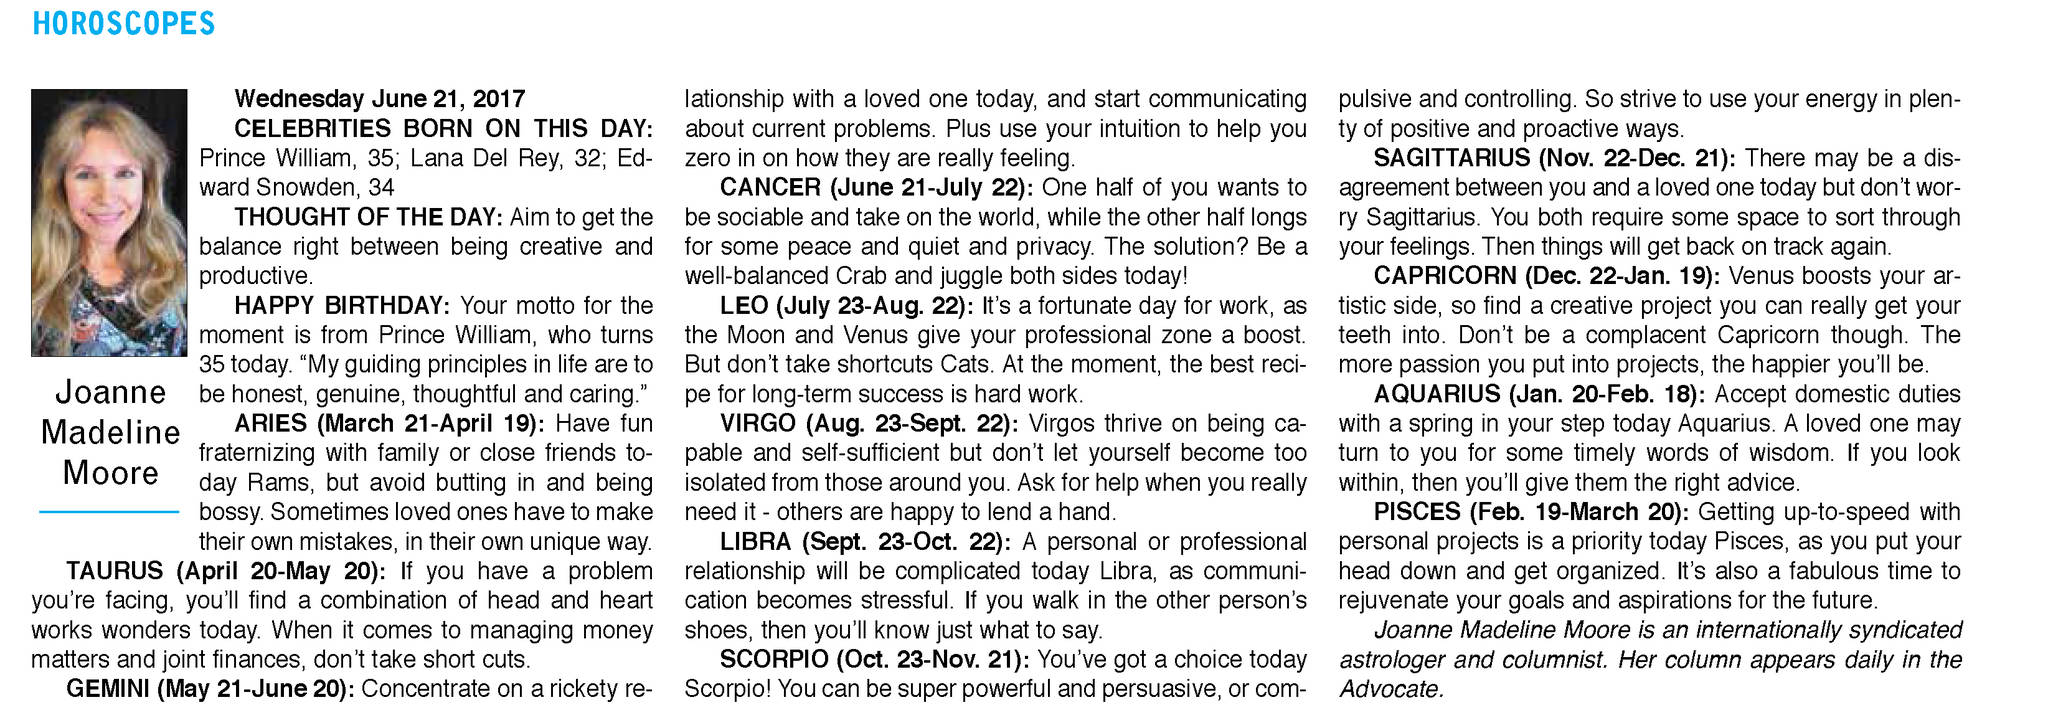 web1_Horoscopes